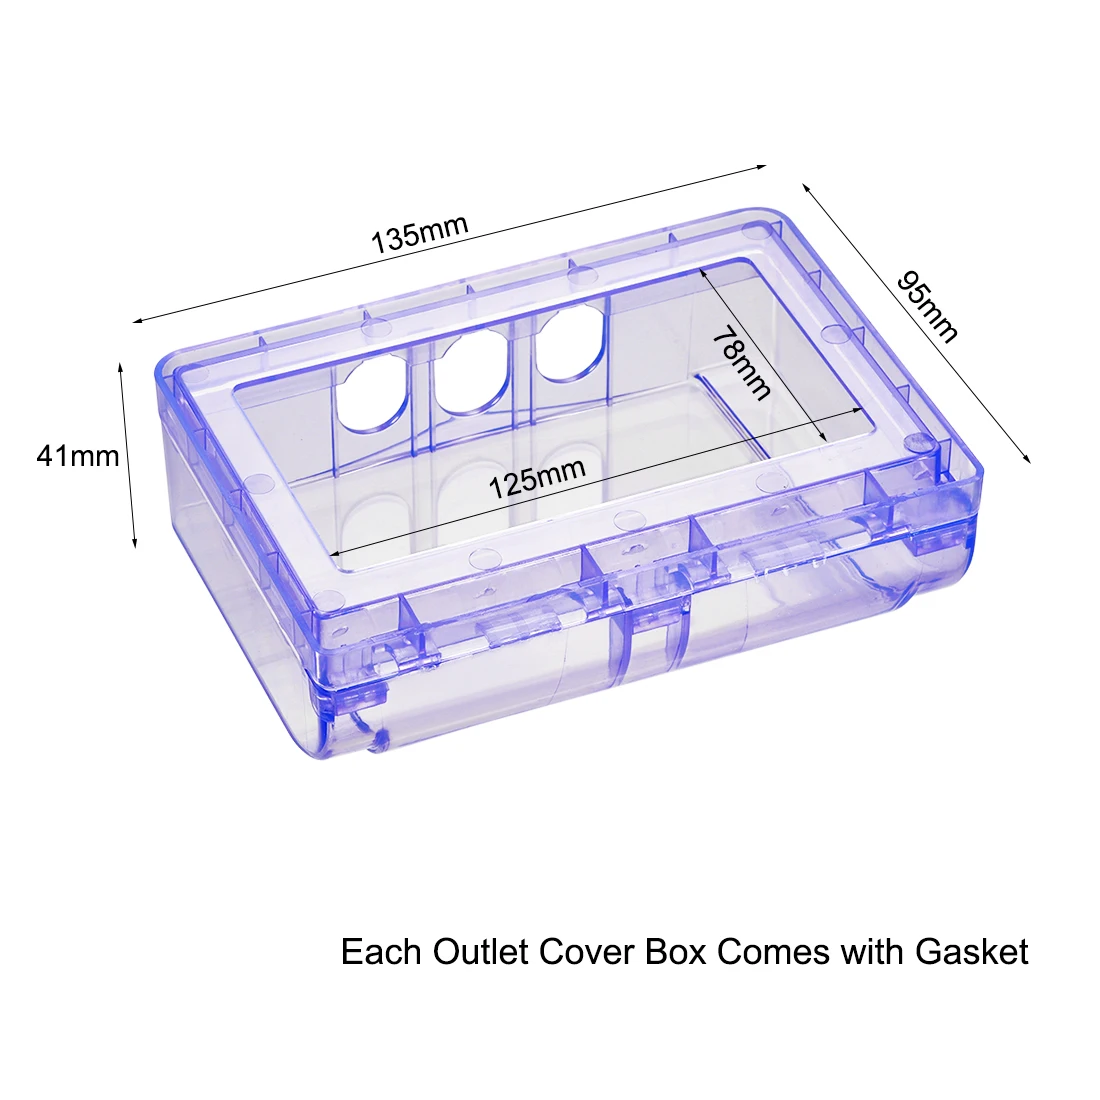 Uxcell всепогодный выход крышка в использовании штепсельная розетка протектор для внутреннего использования s 135x95x41 мм синий